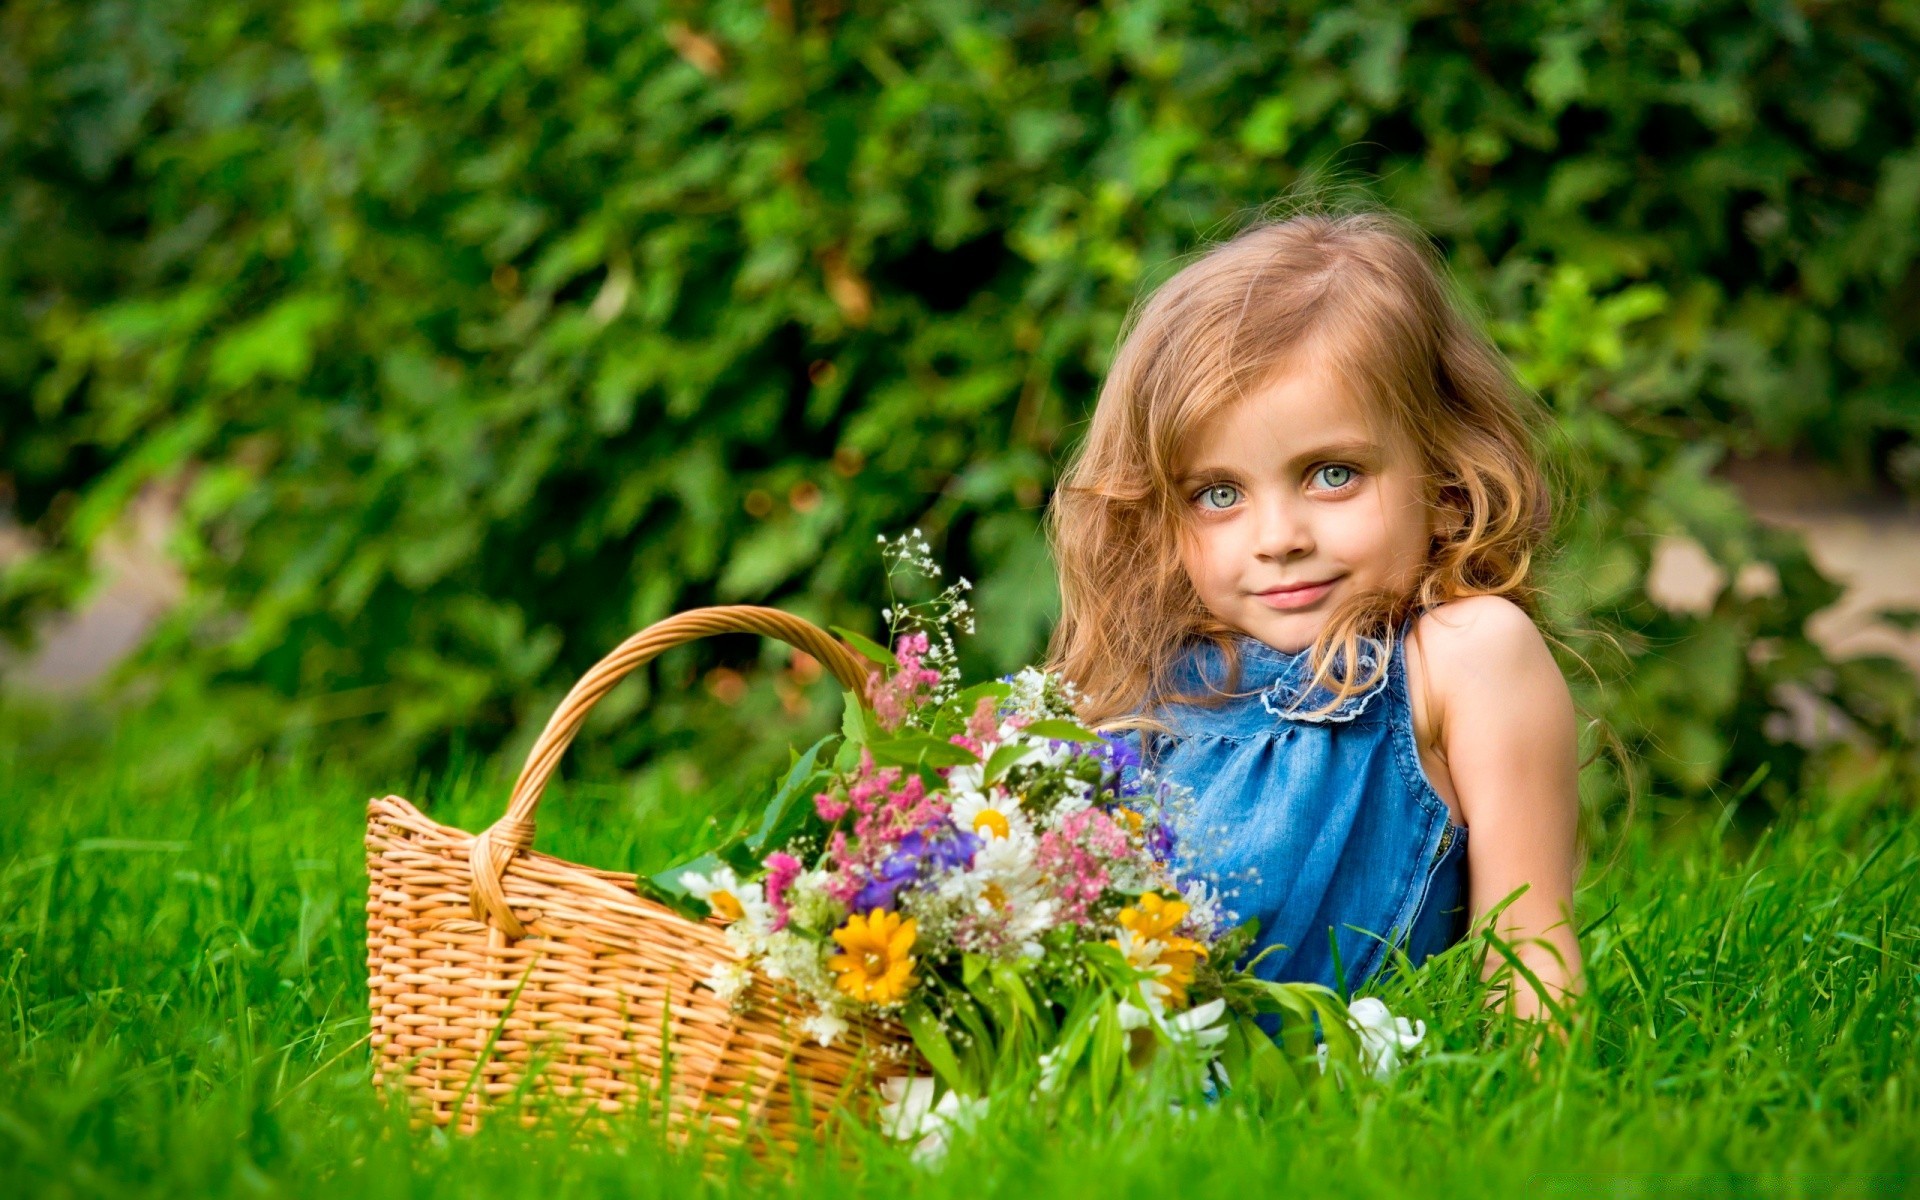 лето природа корзина трава парк ребенок сад на открытом воздухе мало цветок милые сенокос газон отдых поле удовольствие красивые улыбка задворк девушка